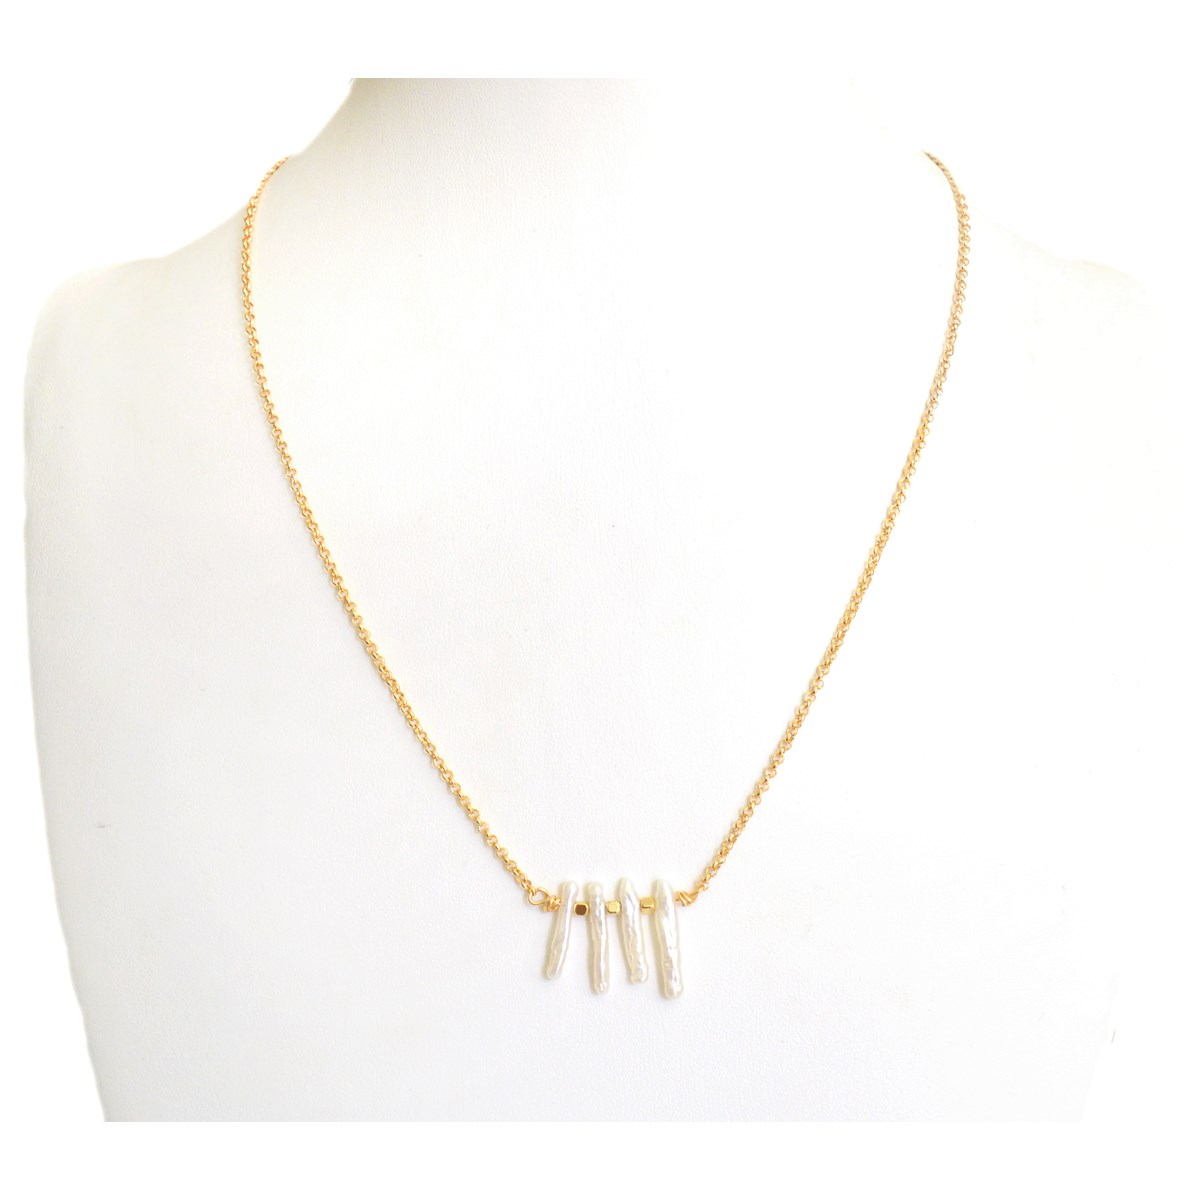 Collier de style minimaliste de perles d'eau douce Keshi. doré à l 'or fin - vue 2